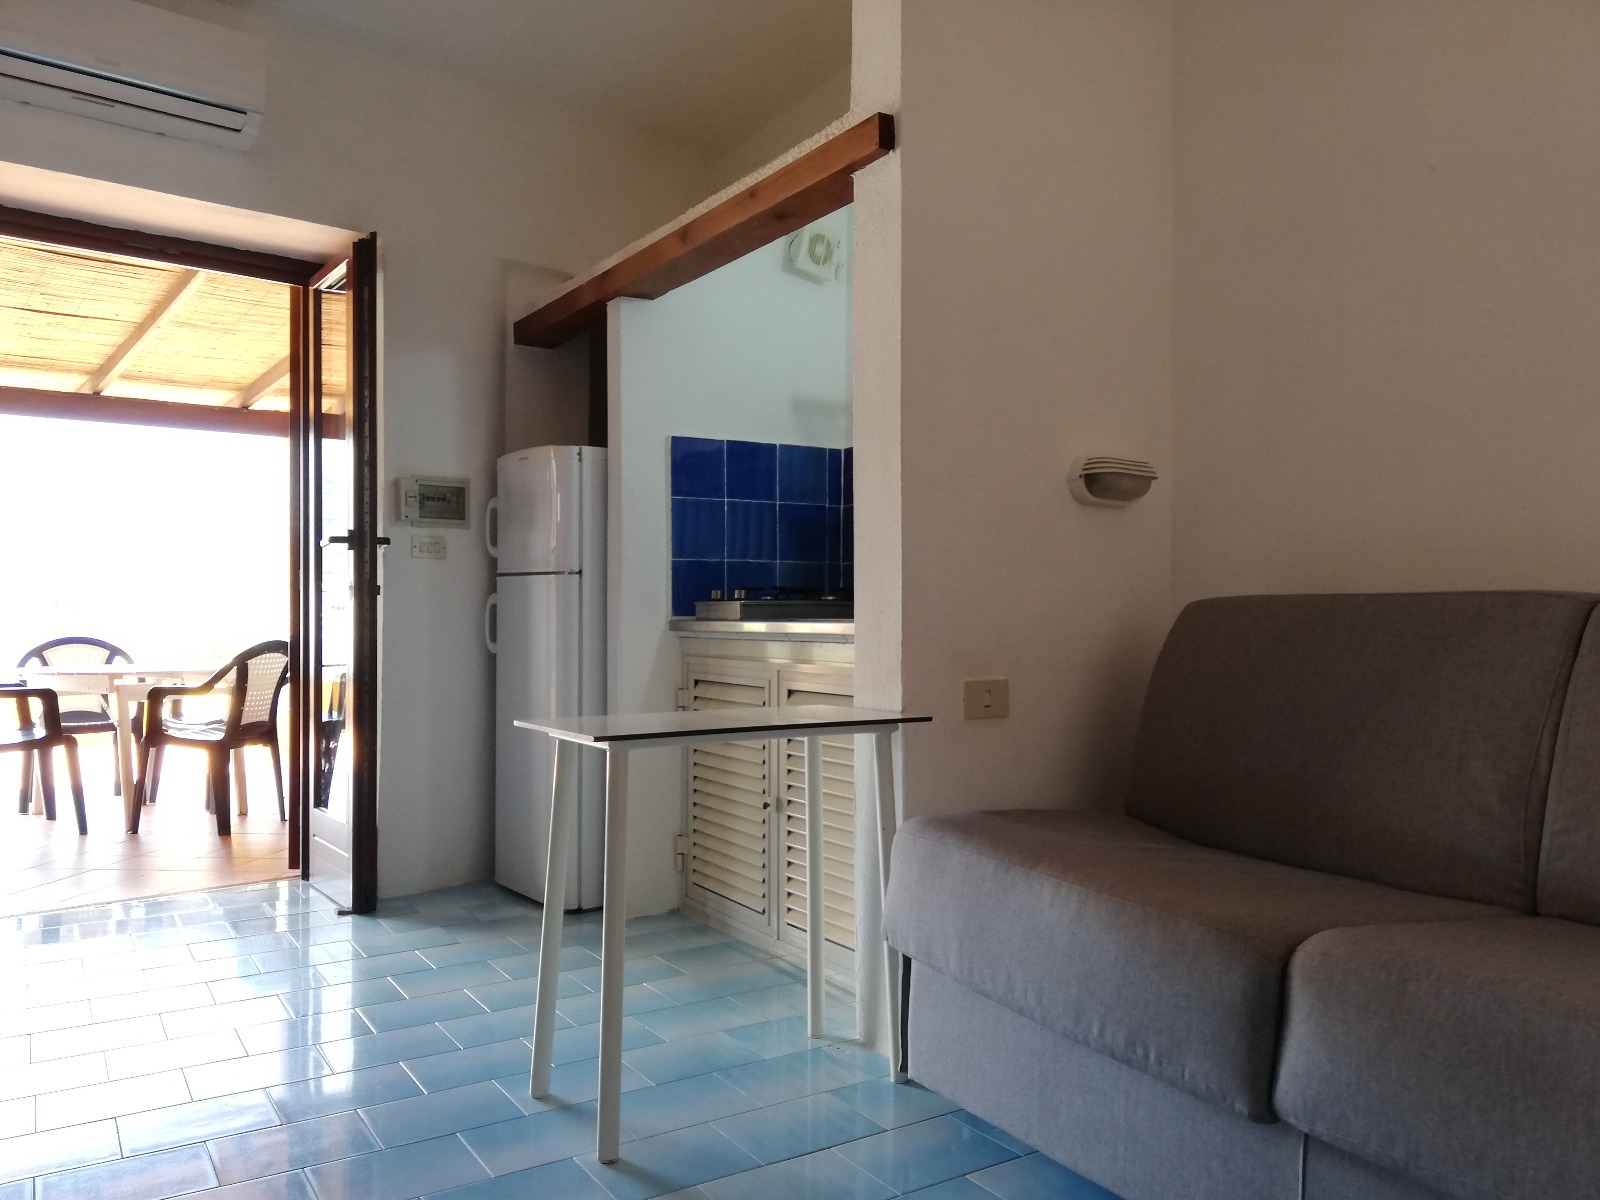 Appartamento in vendita a Lipari, 2 locali, prezzo € 10.000 | PortaleAgenzieImmobiliari.it